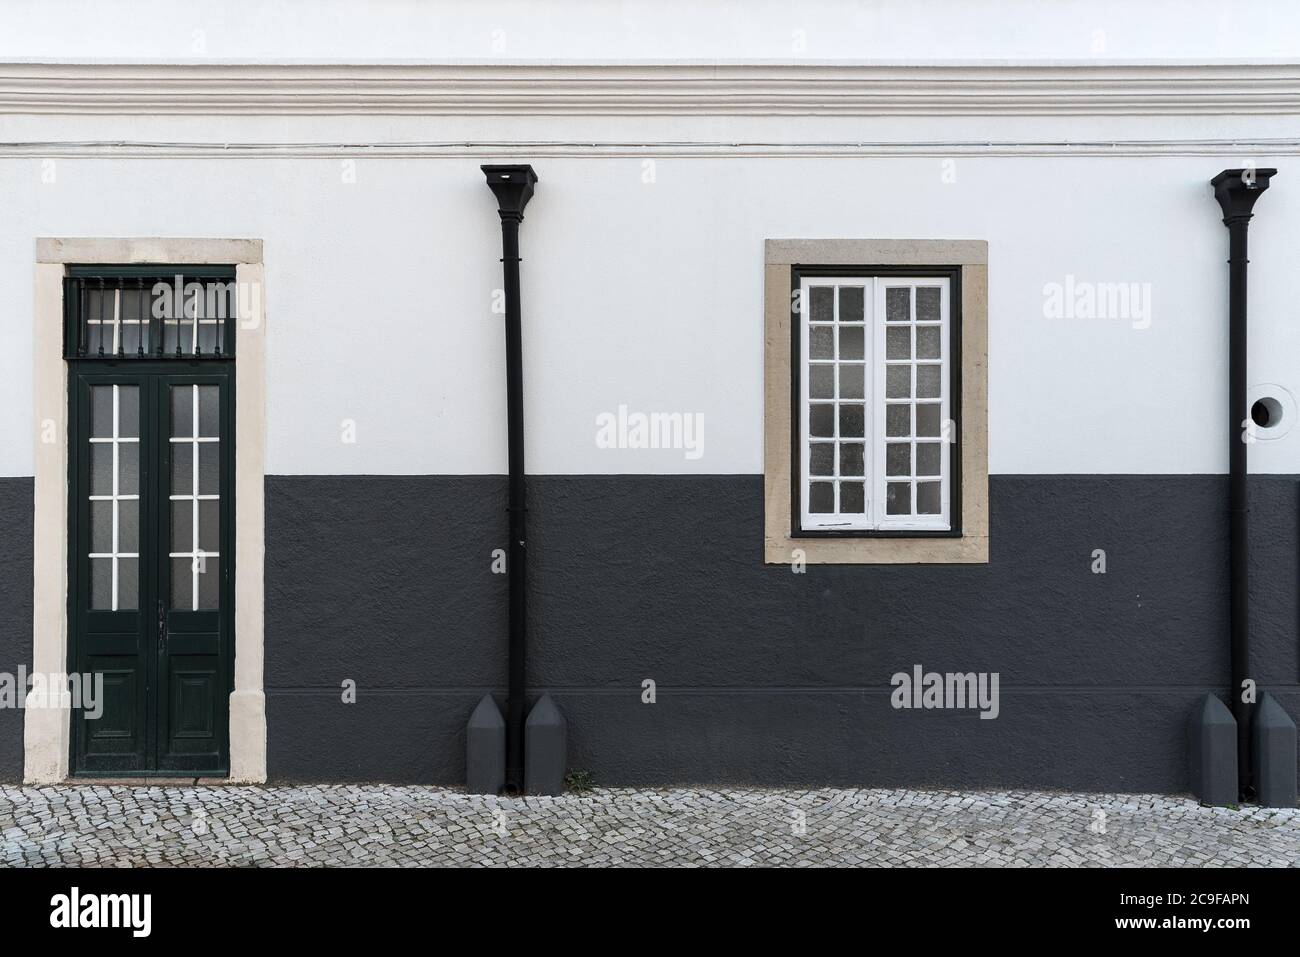 Détail architectural gros plan de façade extérieure noire et blanche traditionnelle maison de rue avec entrée de rue étroite par porte simple fenêtre et r Banque D'Images